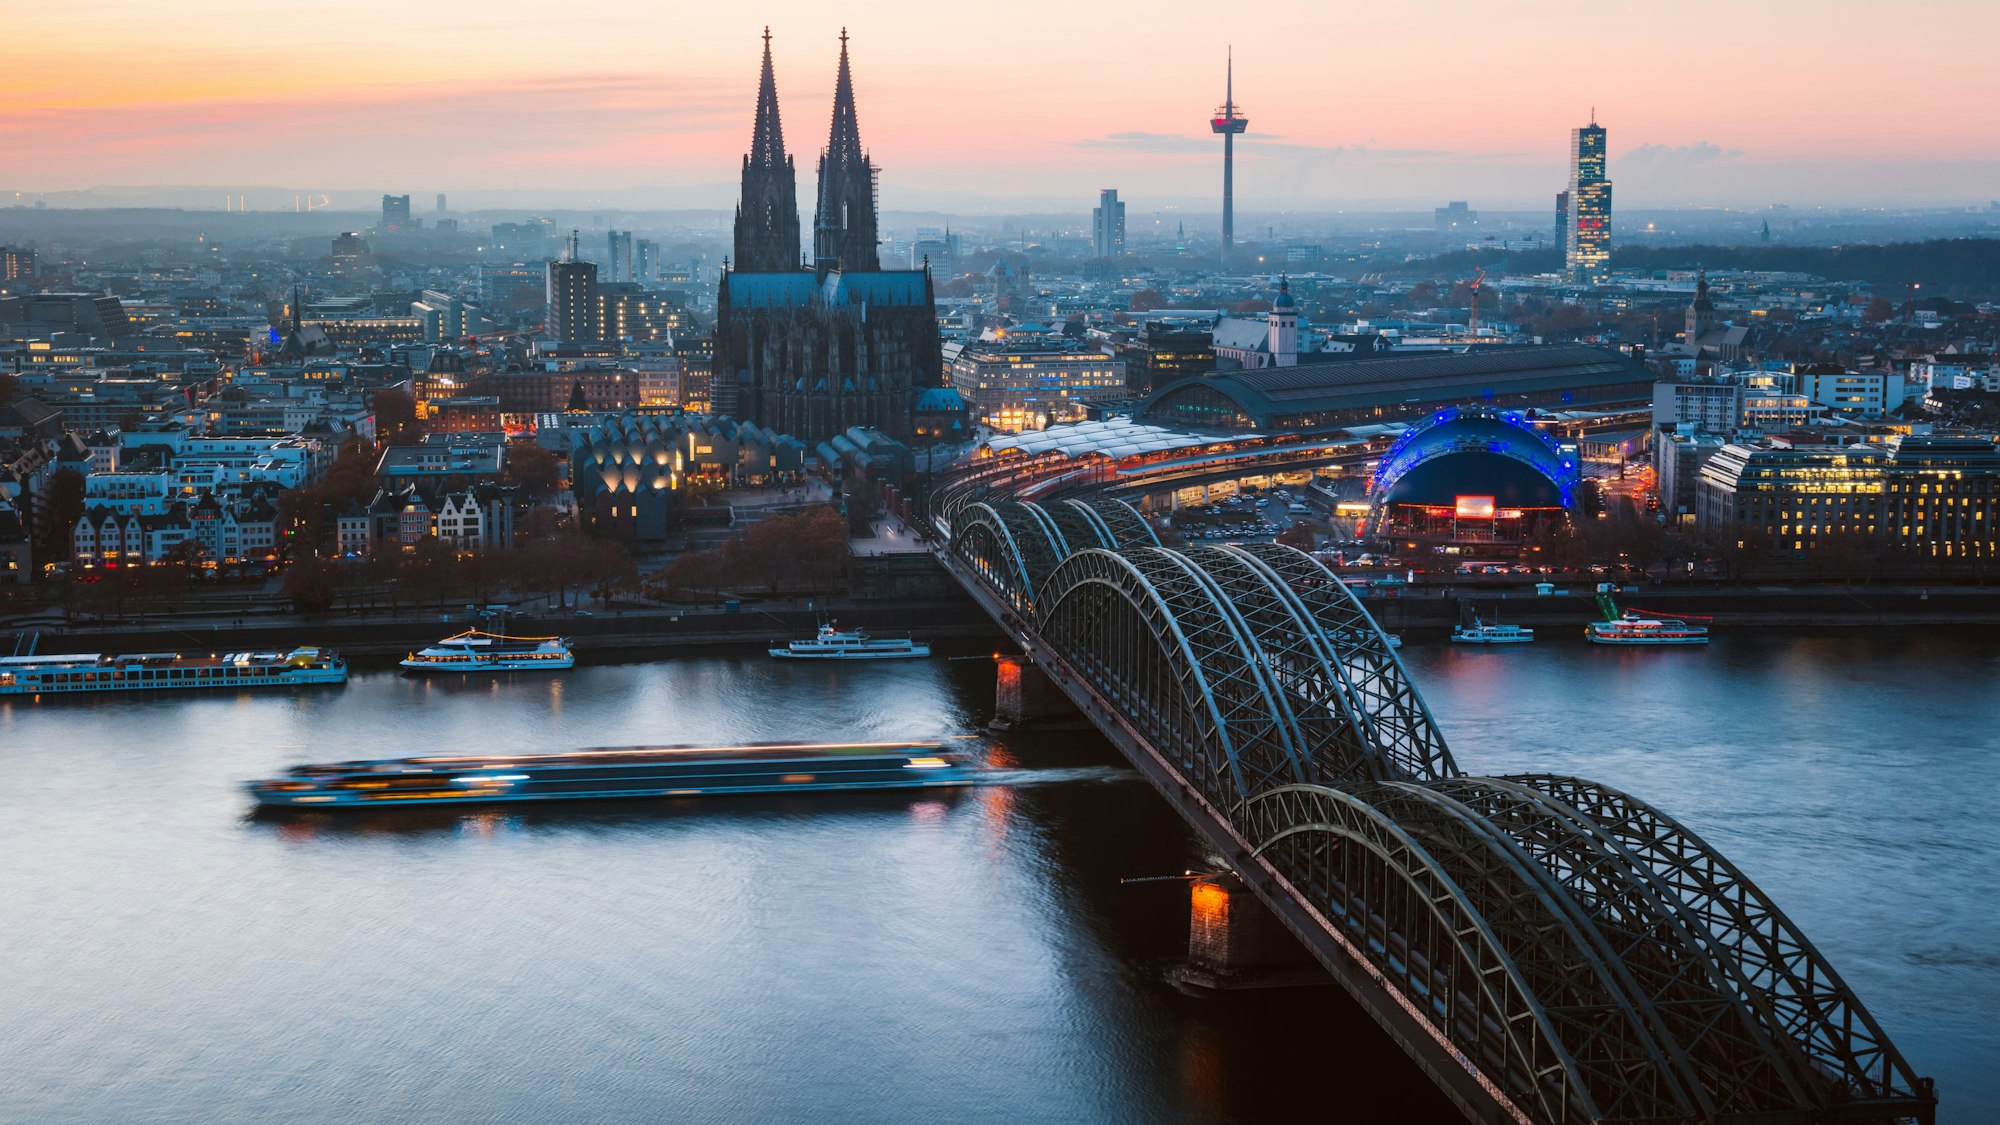 Das Bild zeigt die Hohenzollernbrücke und den Kölner Dom, dahinter der Blick Richtung Westen.